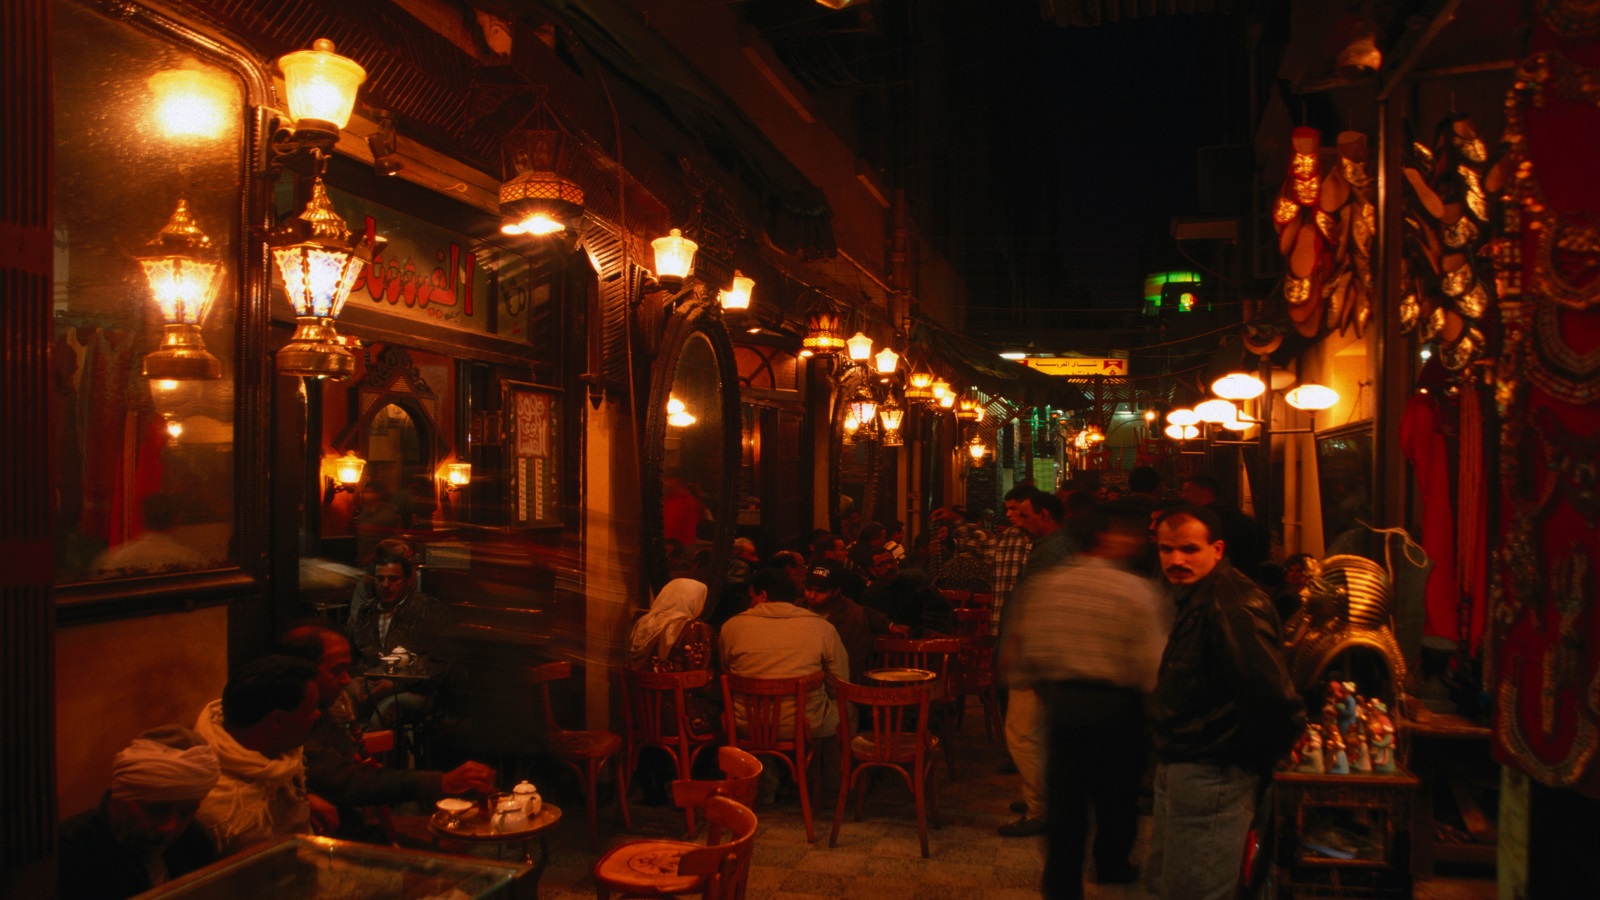 "ليالي المدن": يوم بتنا نحرس الليل في القاهرة